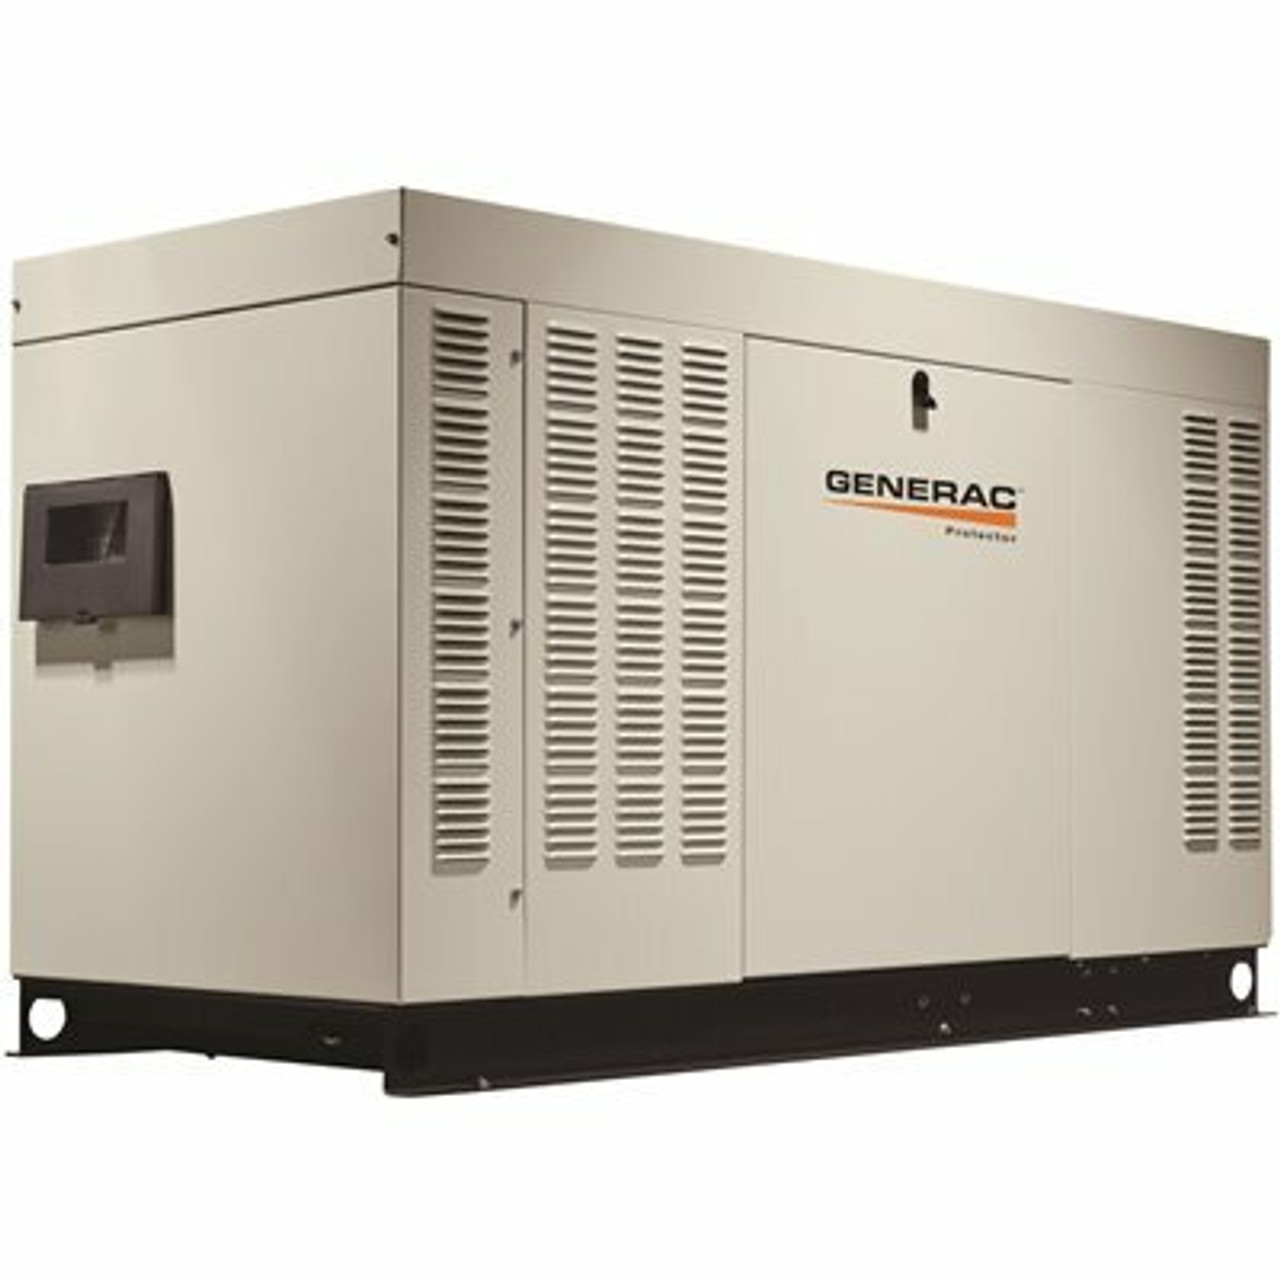 Generac 45,000-Watt 120-Volt/240-Volt Liquid Cooled Standby Generator 3-Phase With Aluminum Enclosure - 206465238